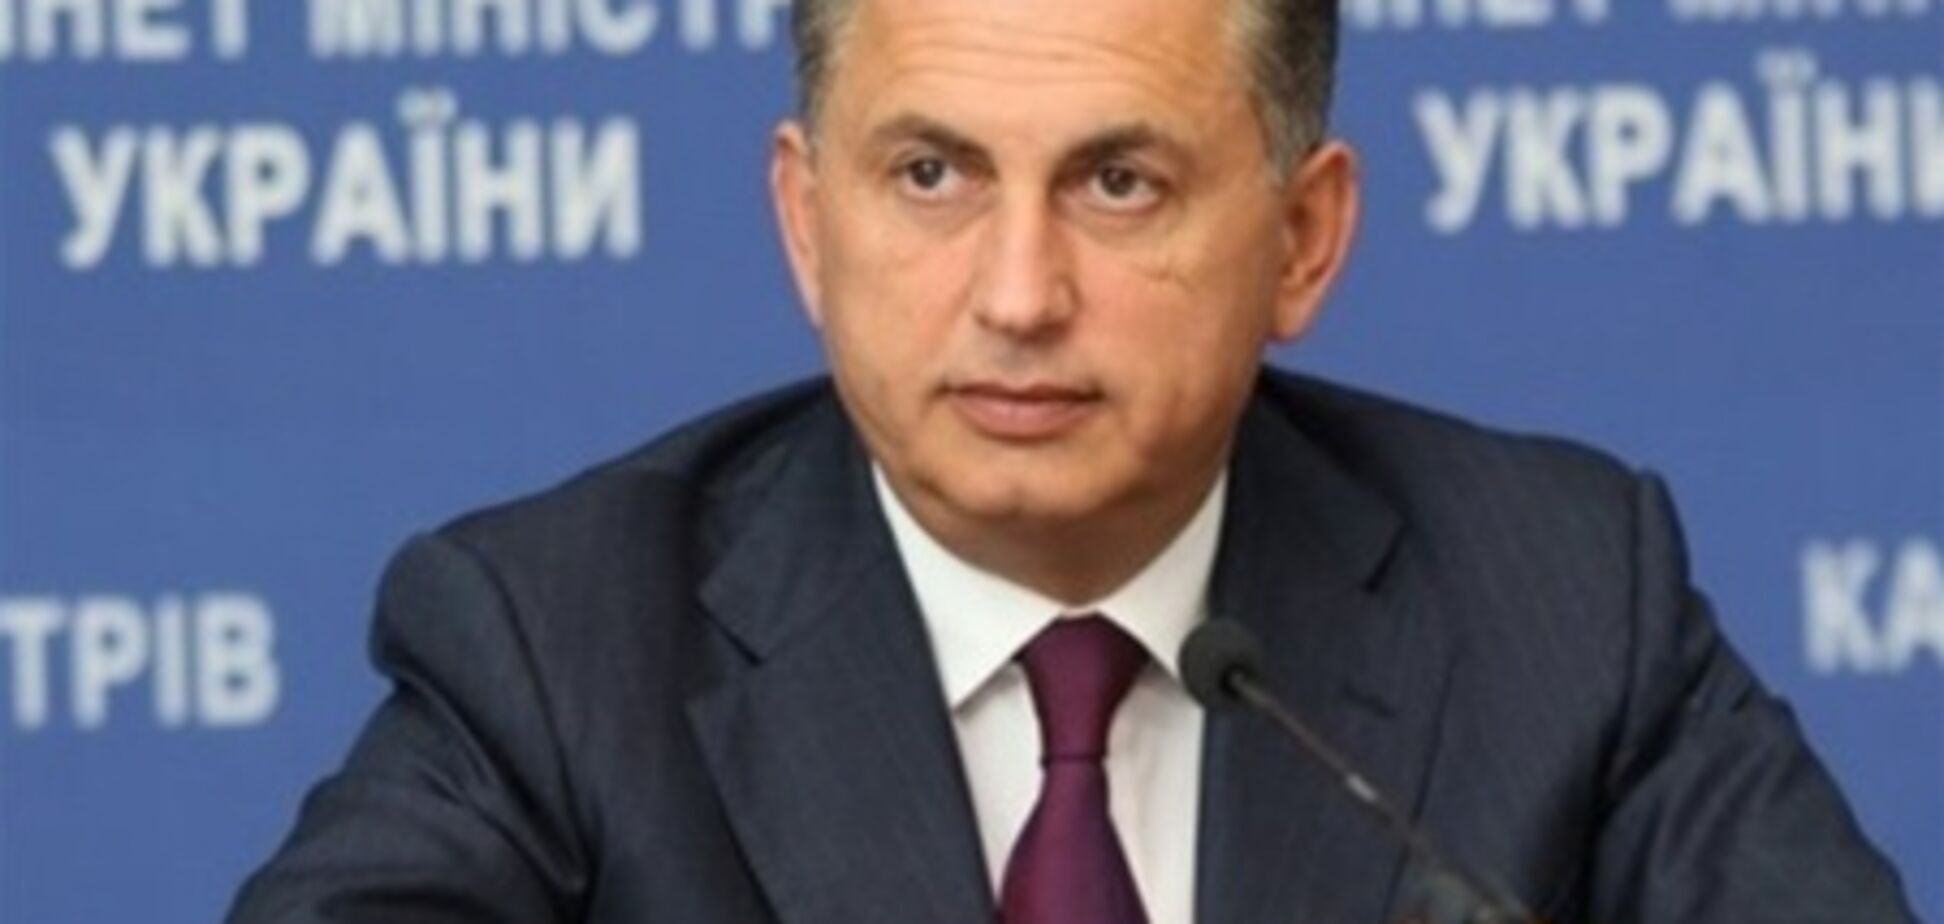 Колесніков в 2012 році отримав 278 млн грн доходу